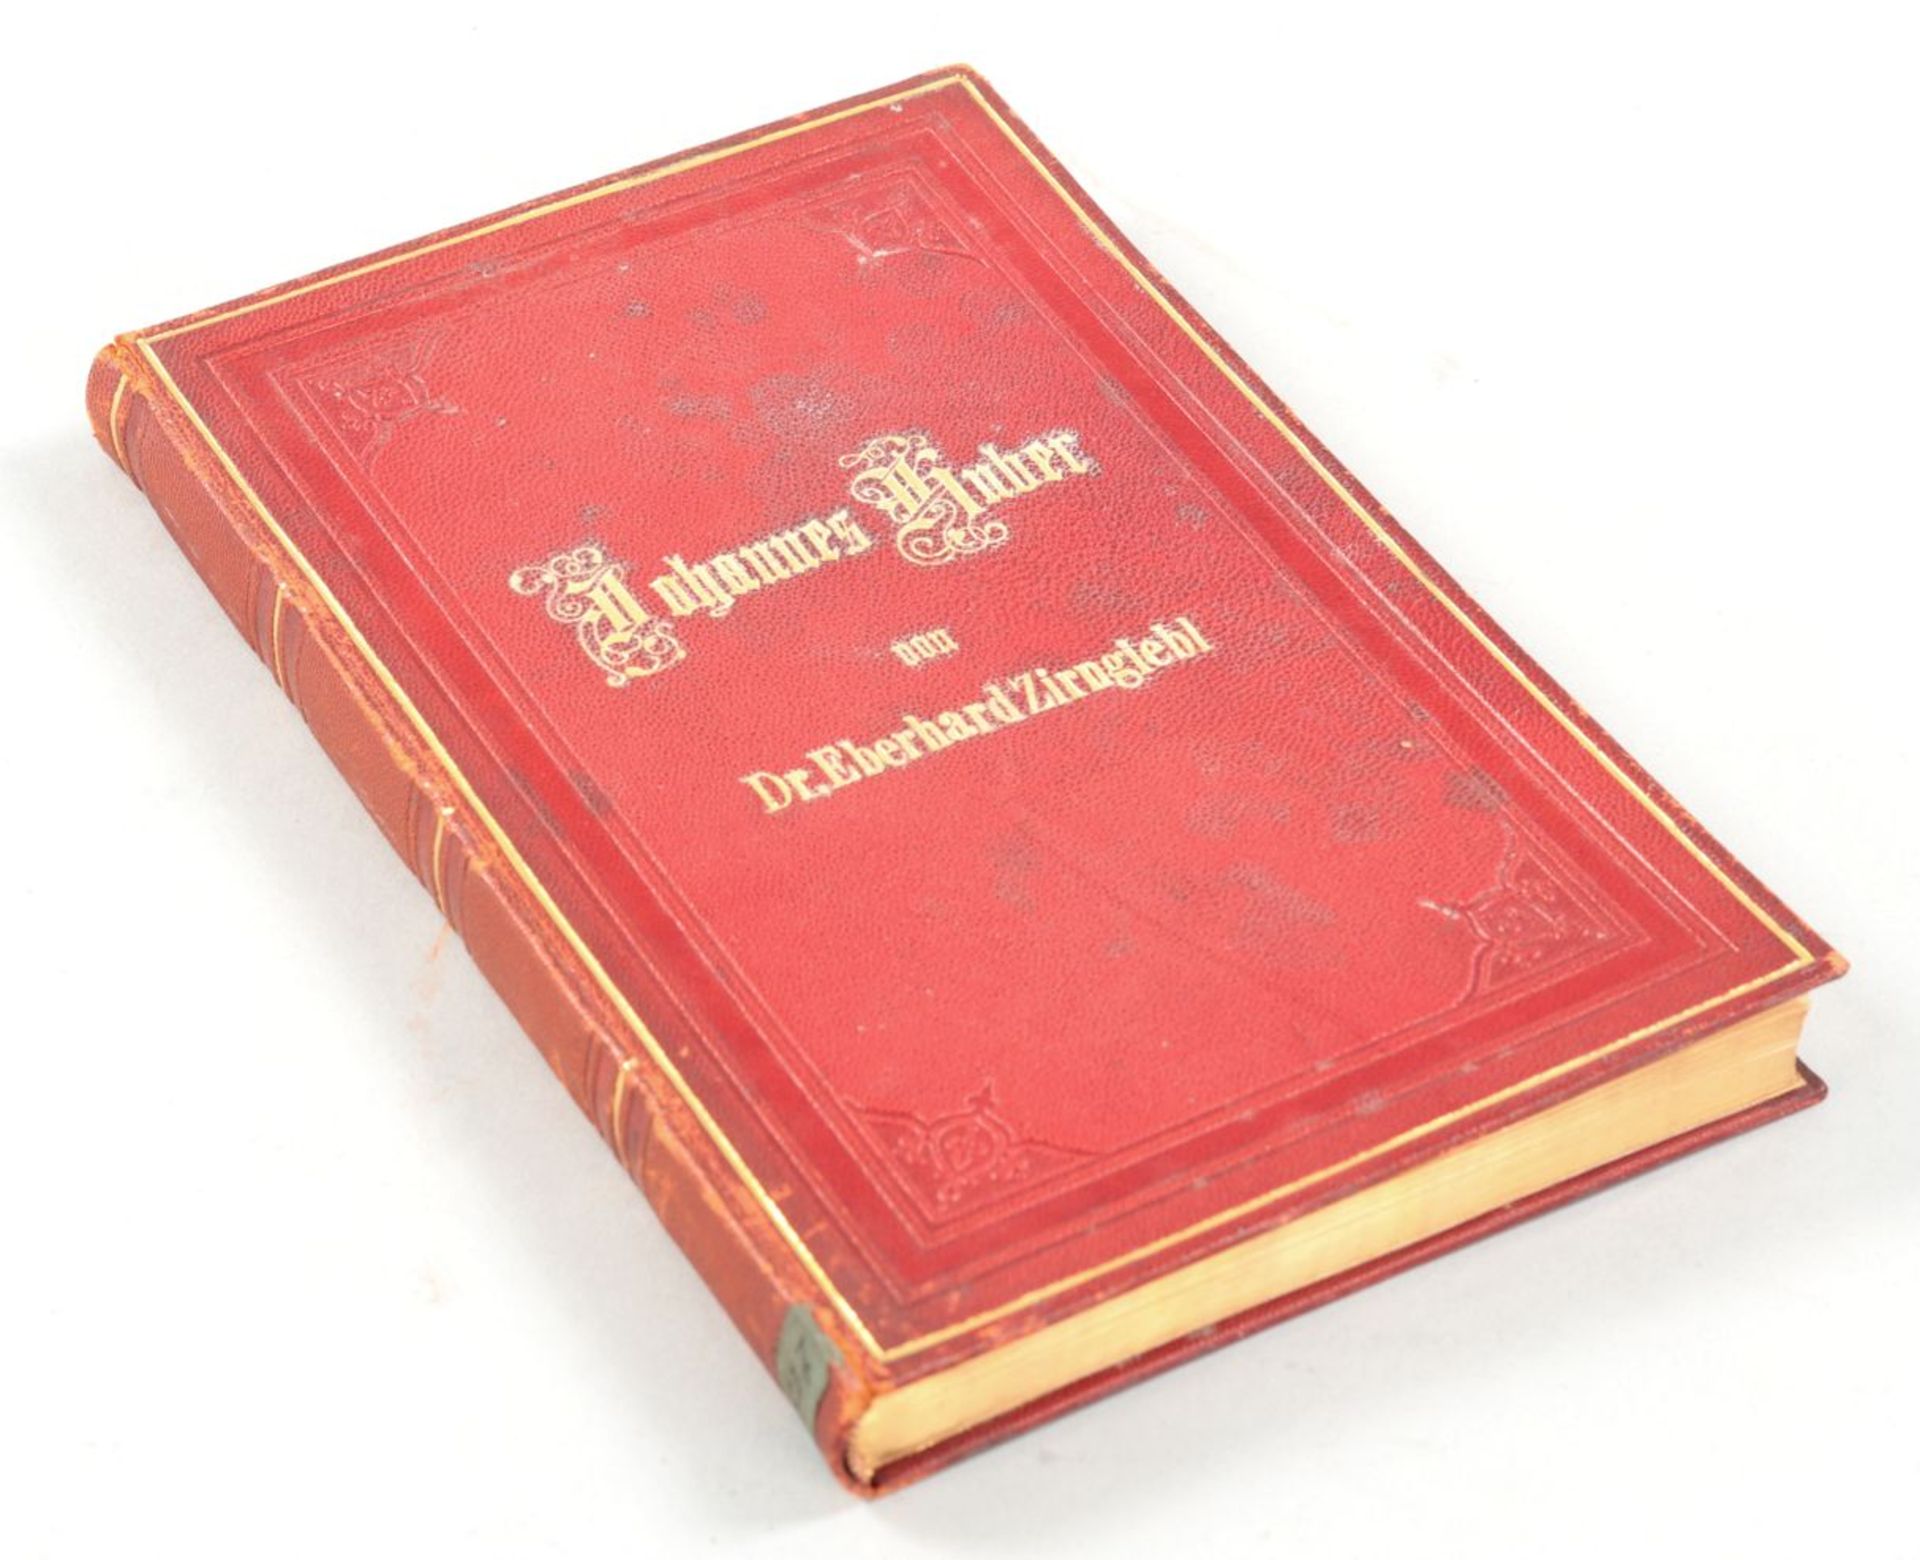 Buch "Johannes Huber" a.d. Bibliothek der Marie Therese